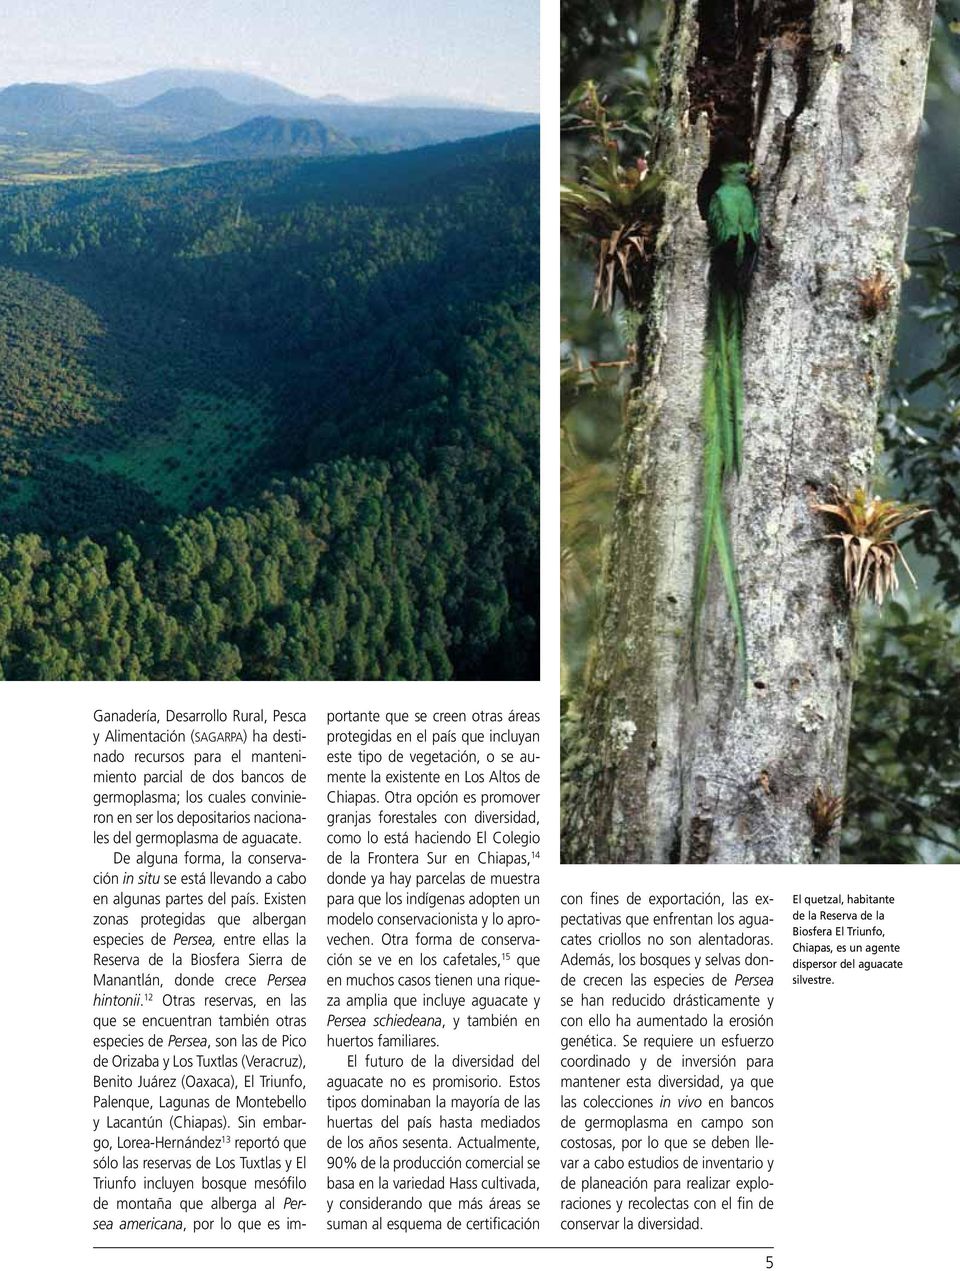 Existen zonas protegidas que albergan especies de Persea, entre ellas la Reserva de la Biosfera Sierra de Manantlán, donde crece Persea hintonii.